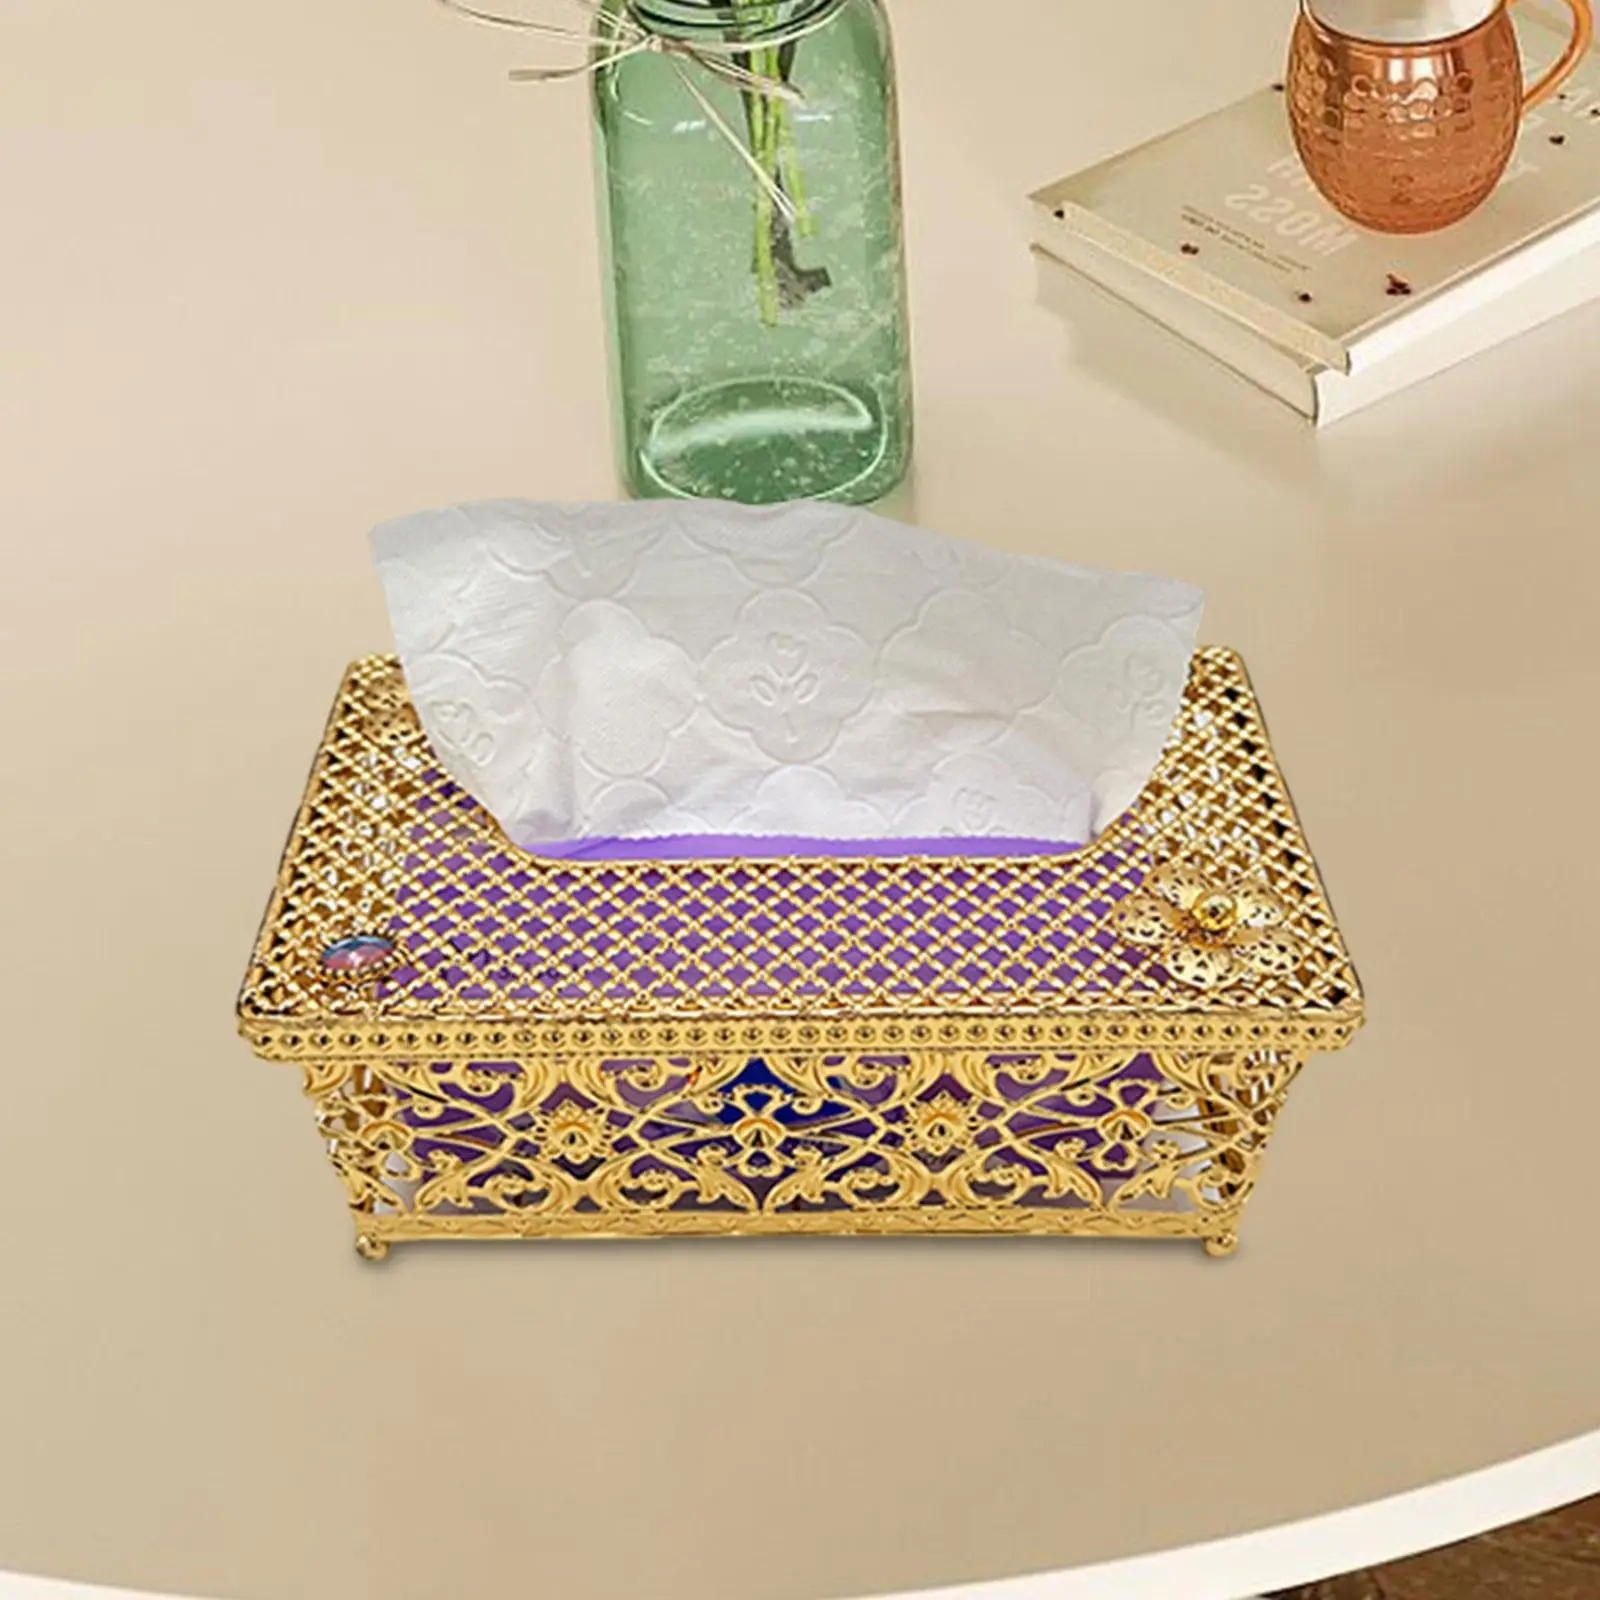 Tissue Box Cover Napkin Dispenser Bathroom Tissue Holders Toilet Paper Storage Holder for Desks and Tables Decor Vanity